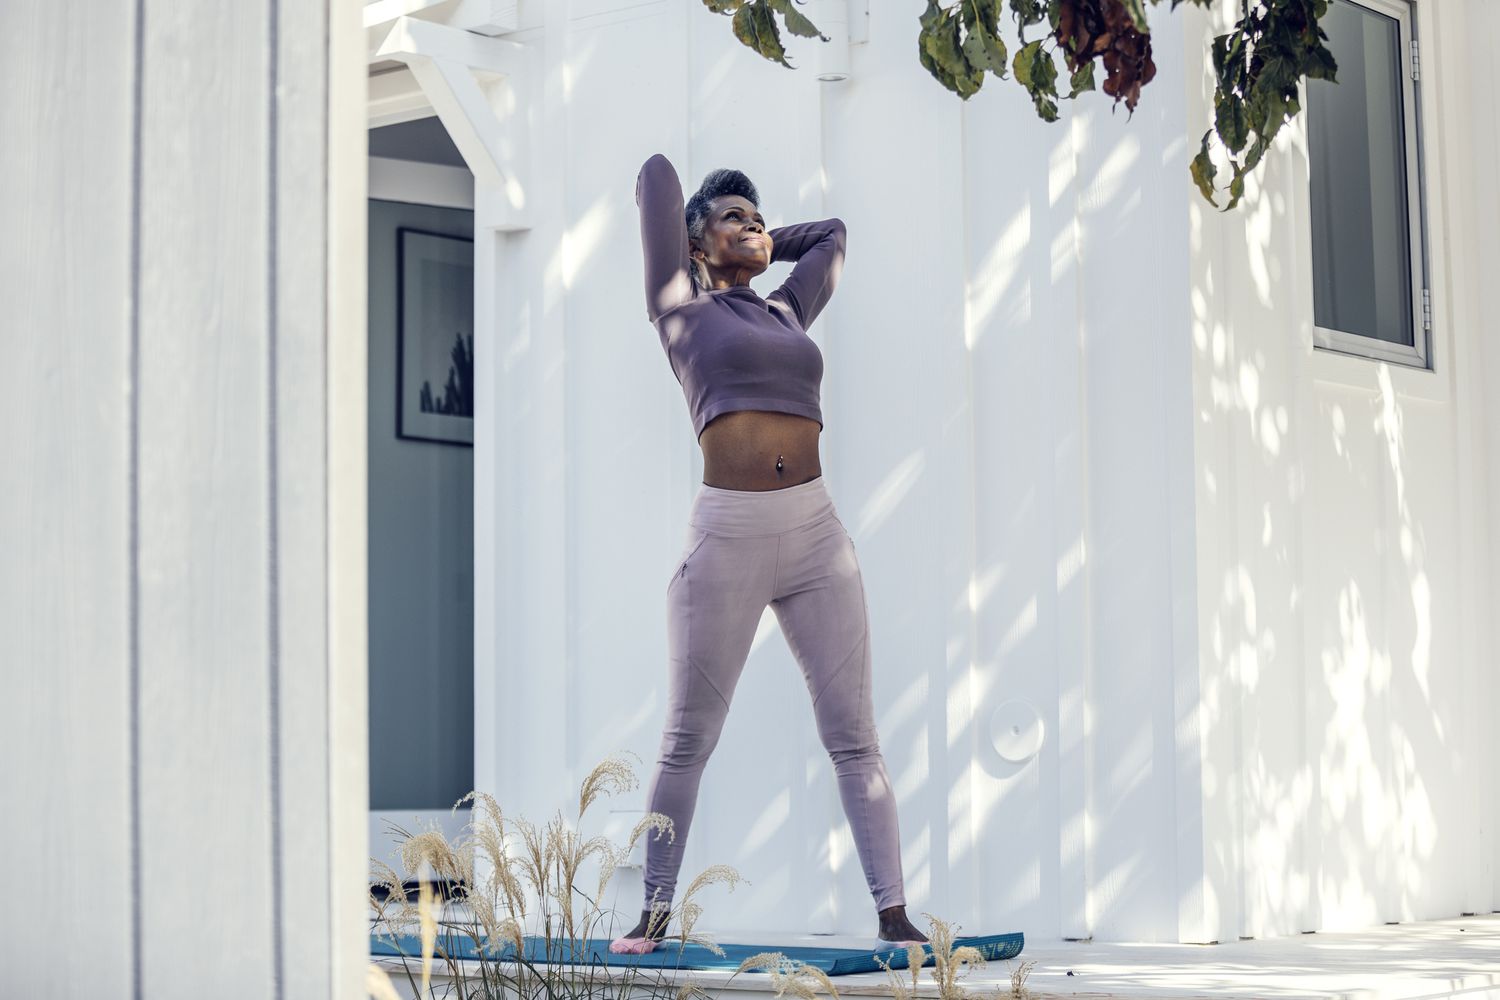 Woman outside doing yoga